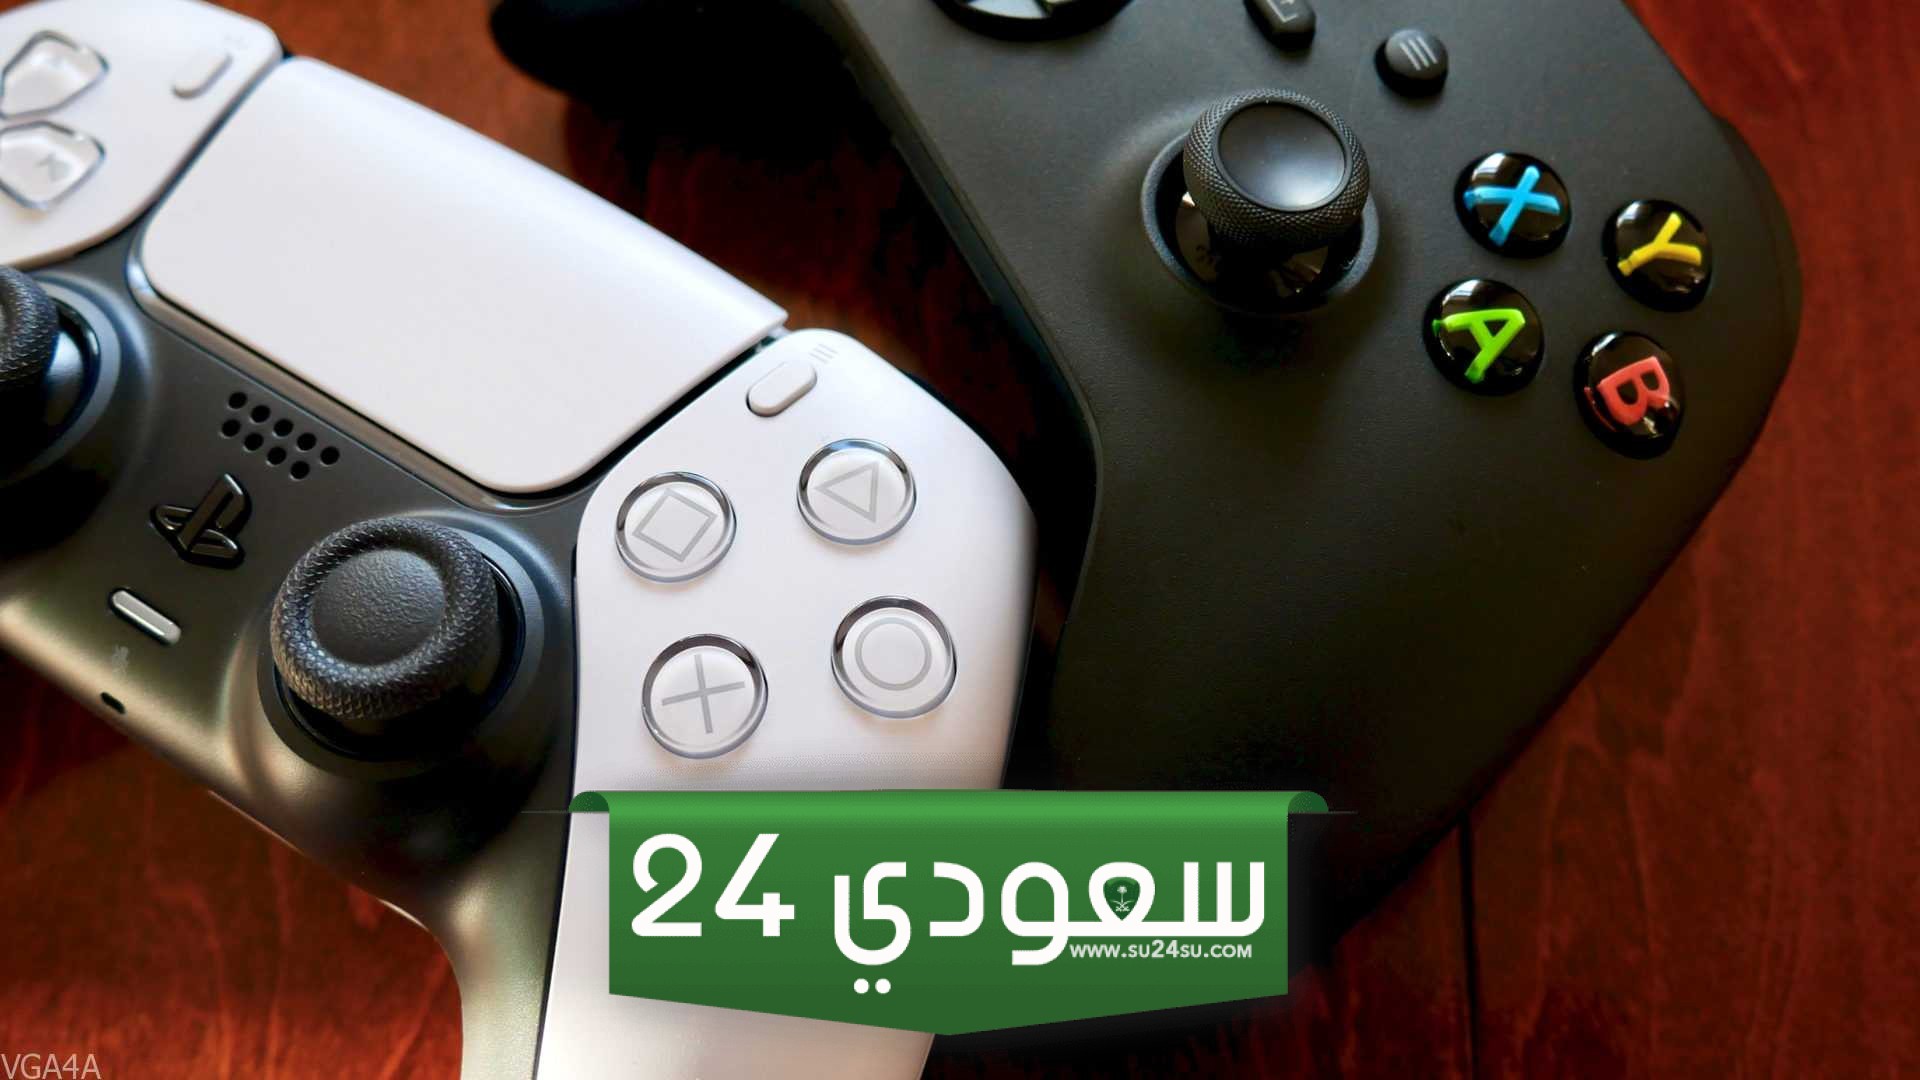 تقرير: بداية ضعيفة لألعاب Xbox على PS5